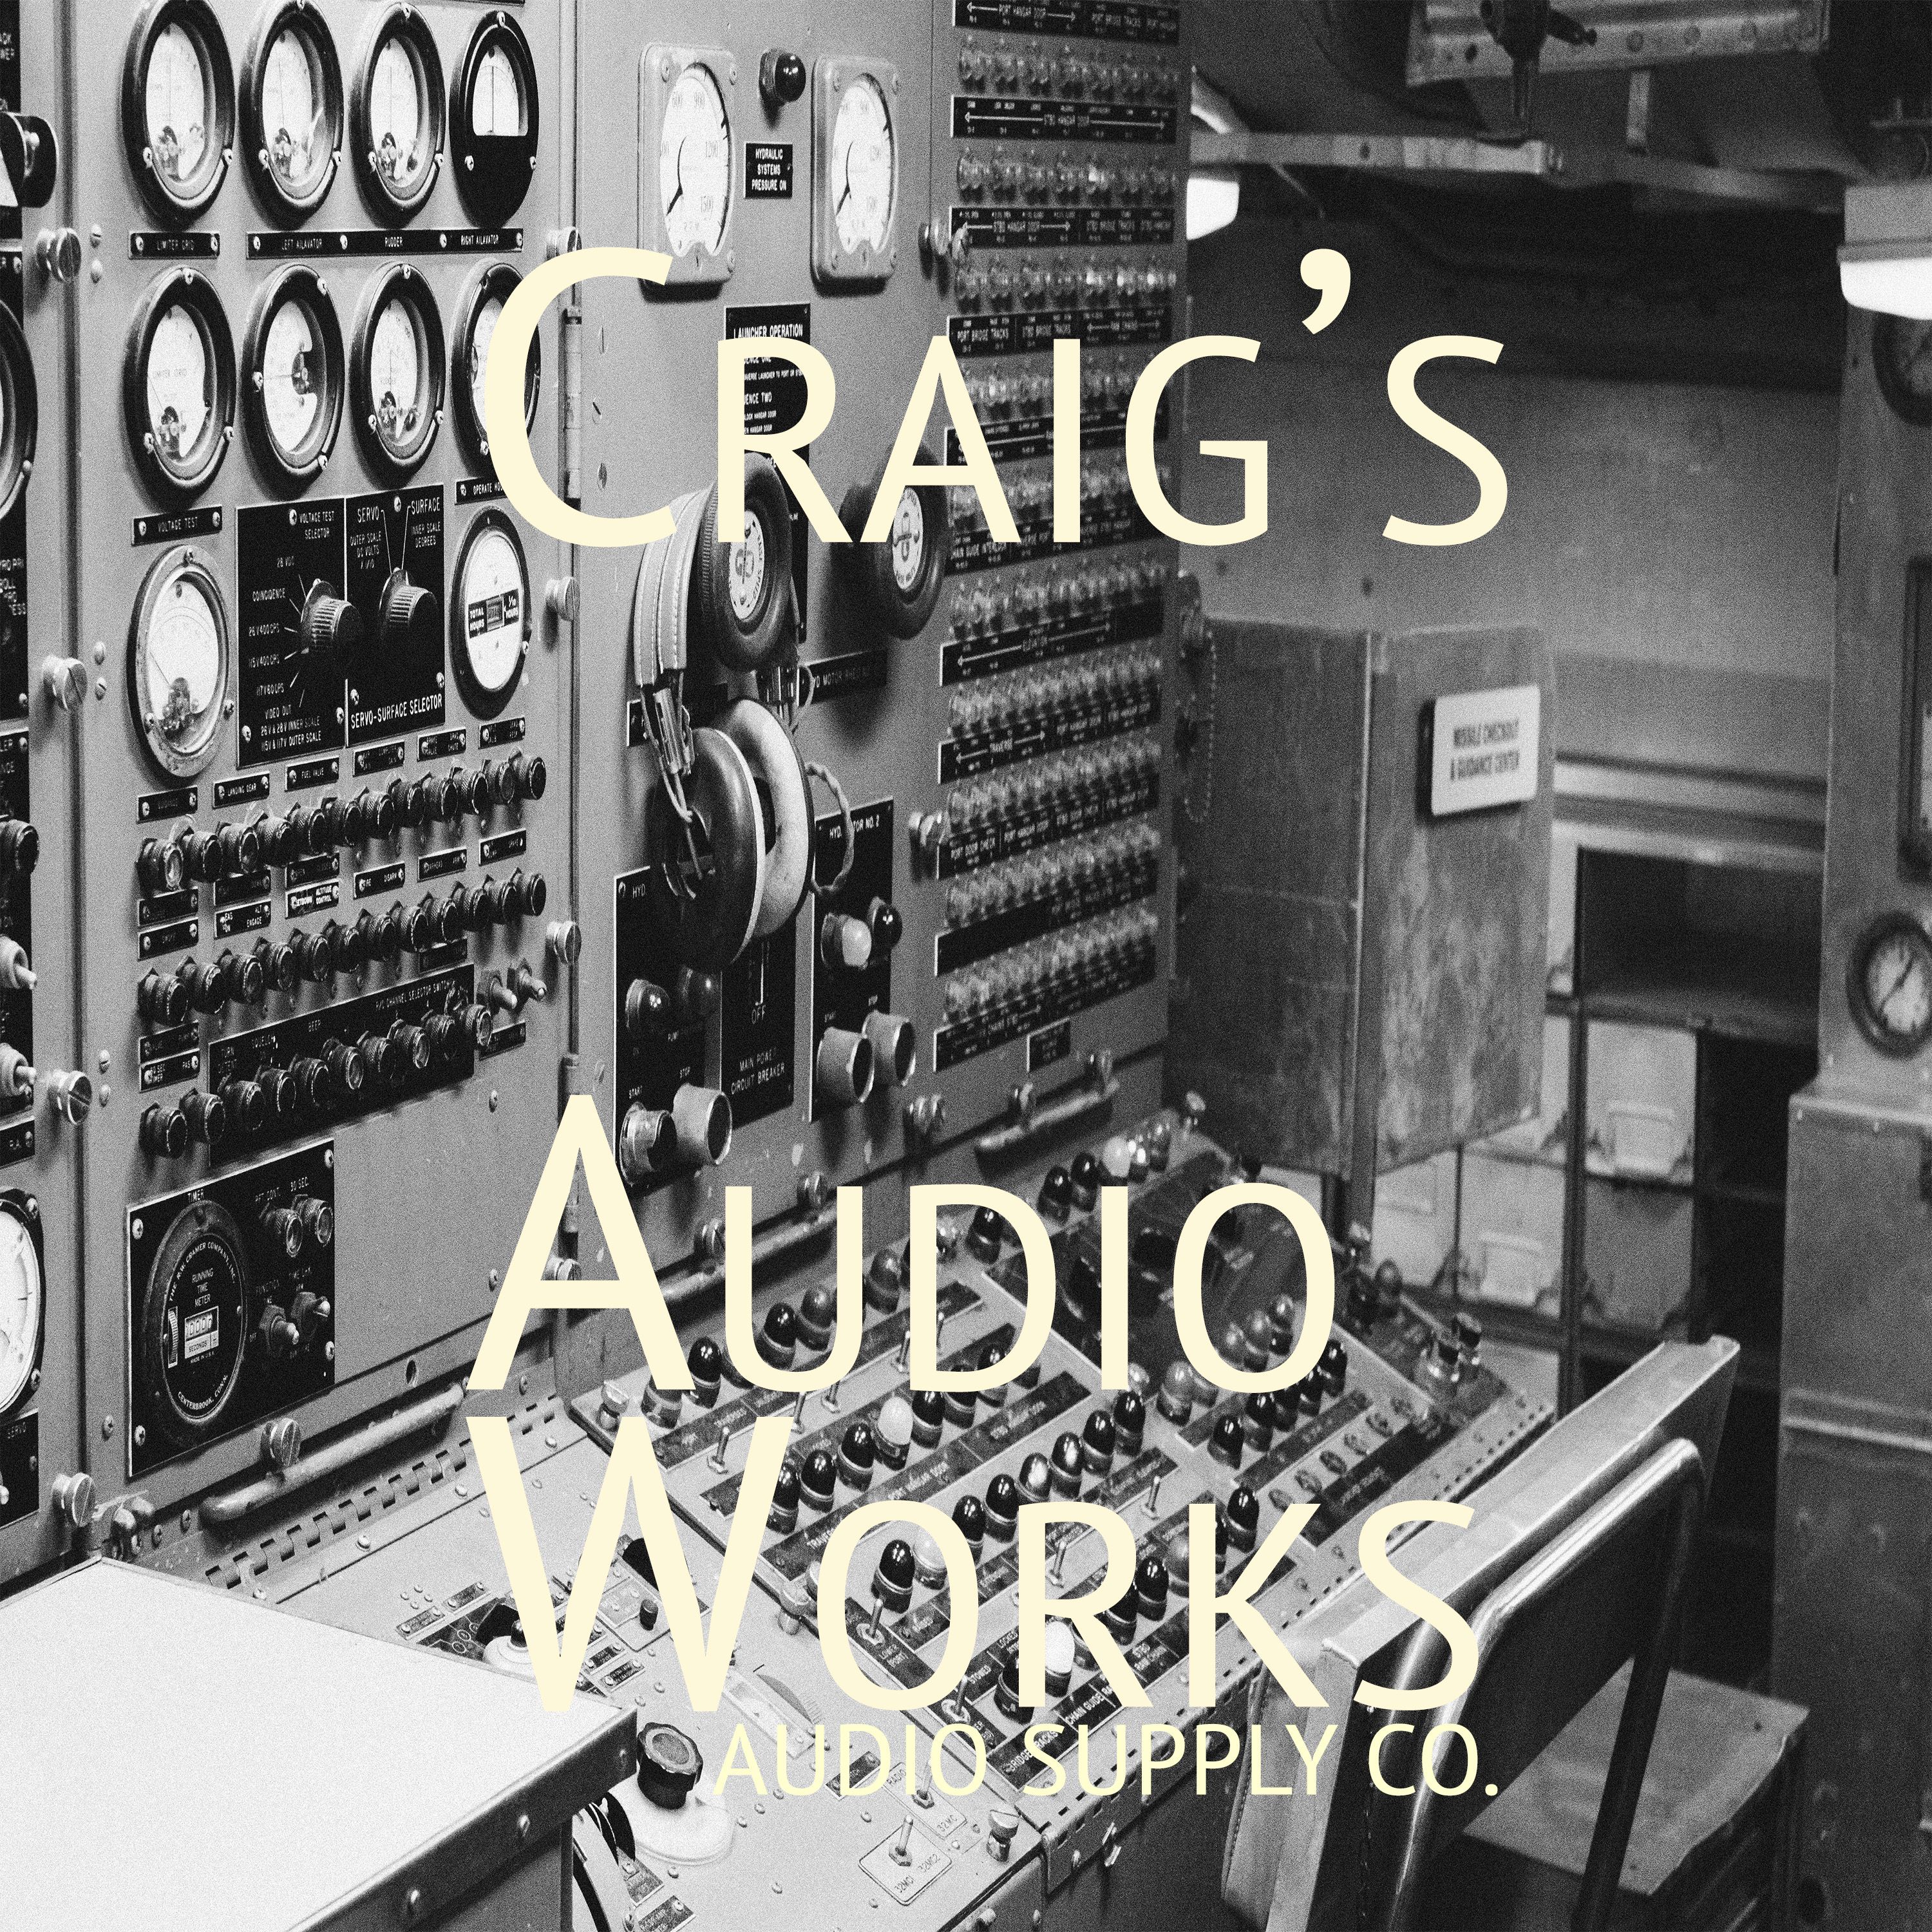 Craigs Audio Works